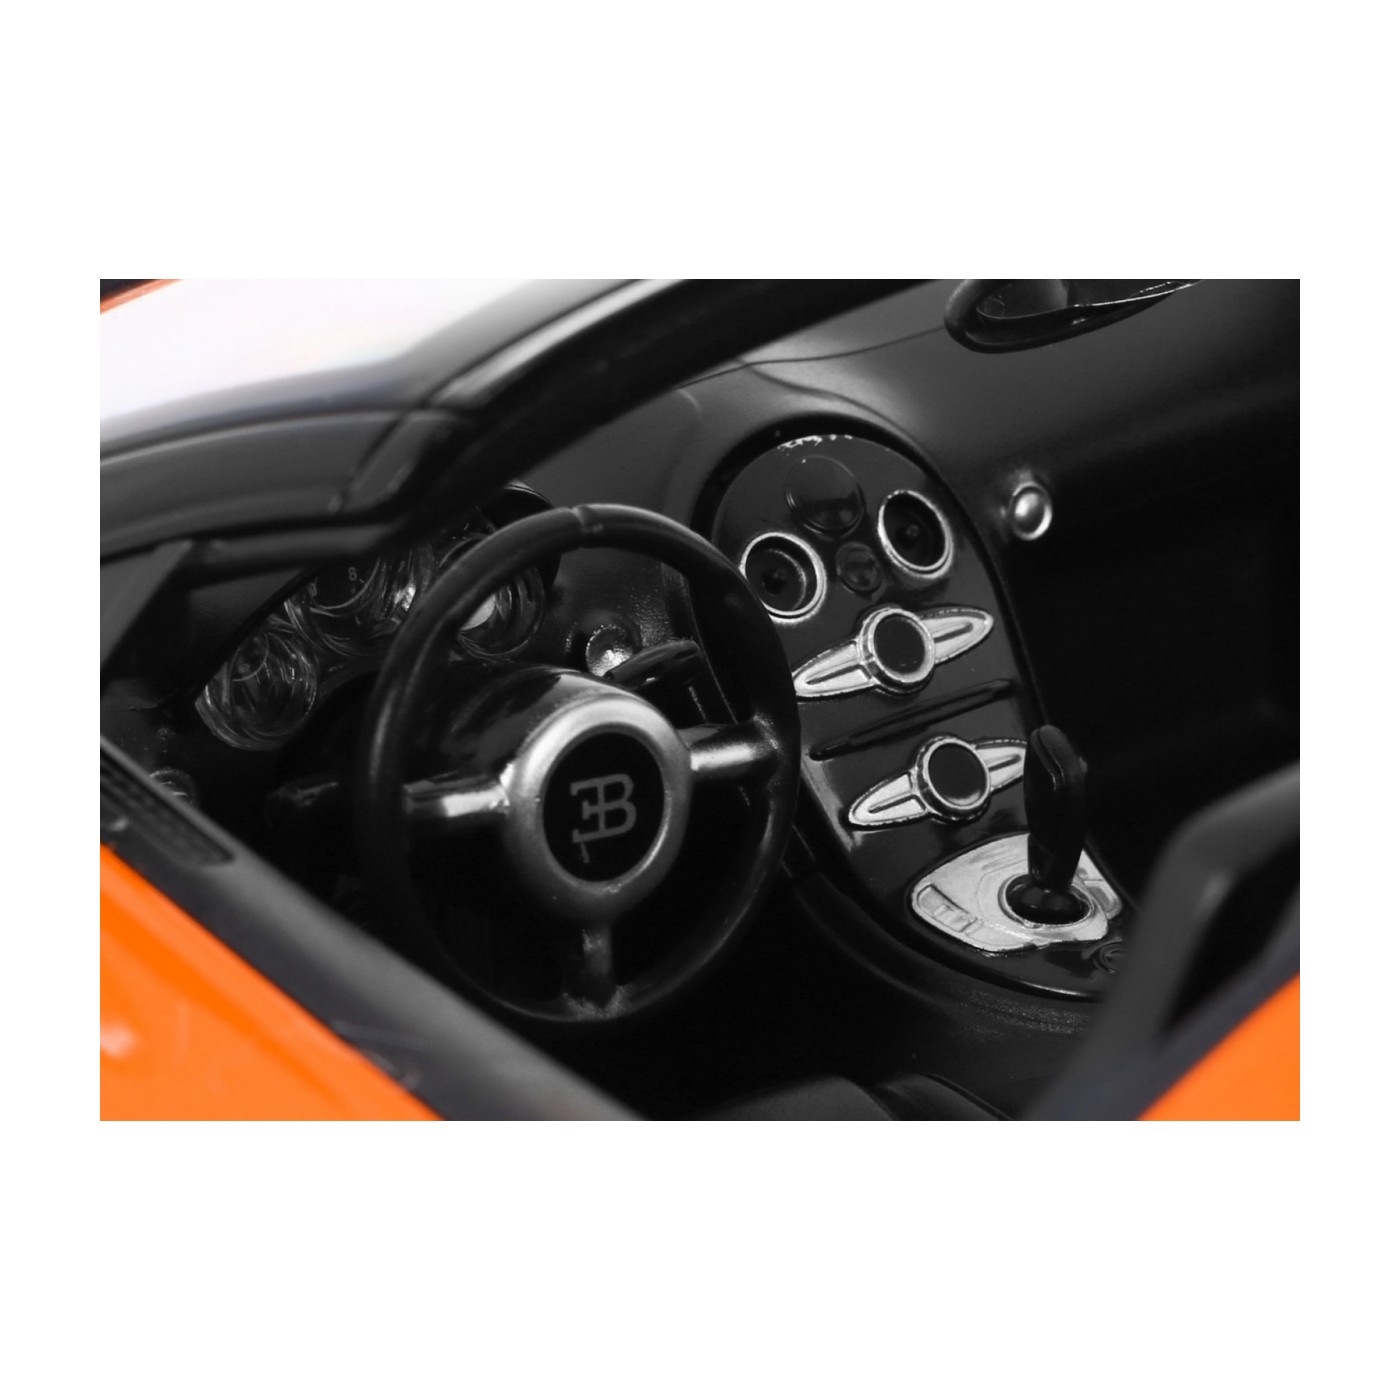 R/C toy car Bugatti Veyron Grand Sport Orange 1:14 RASTAR